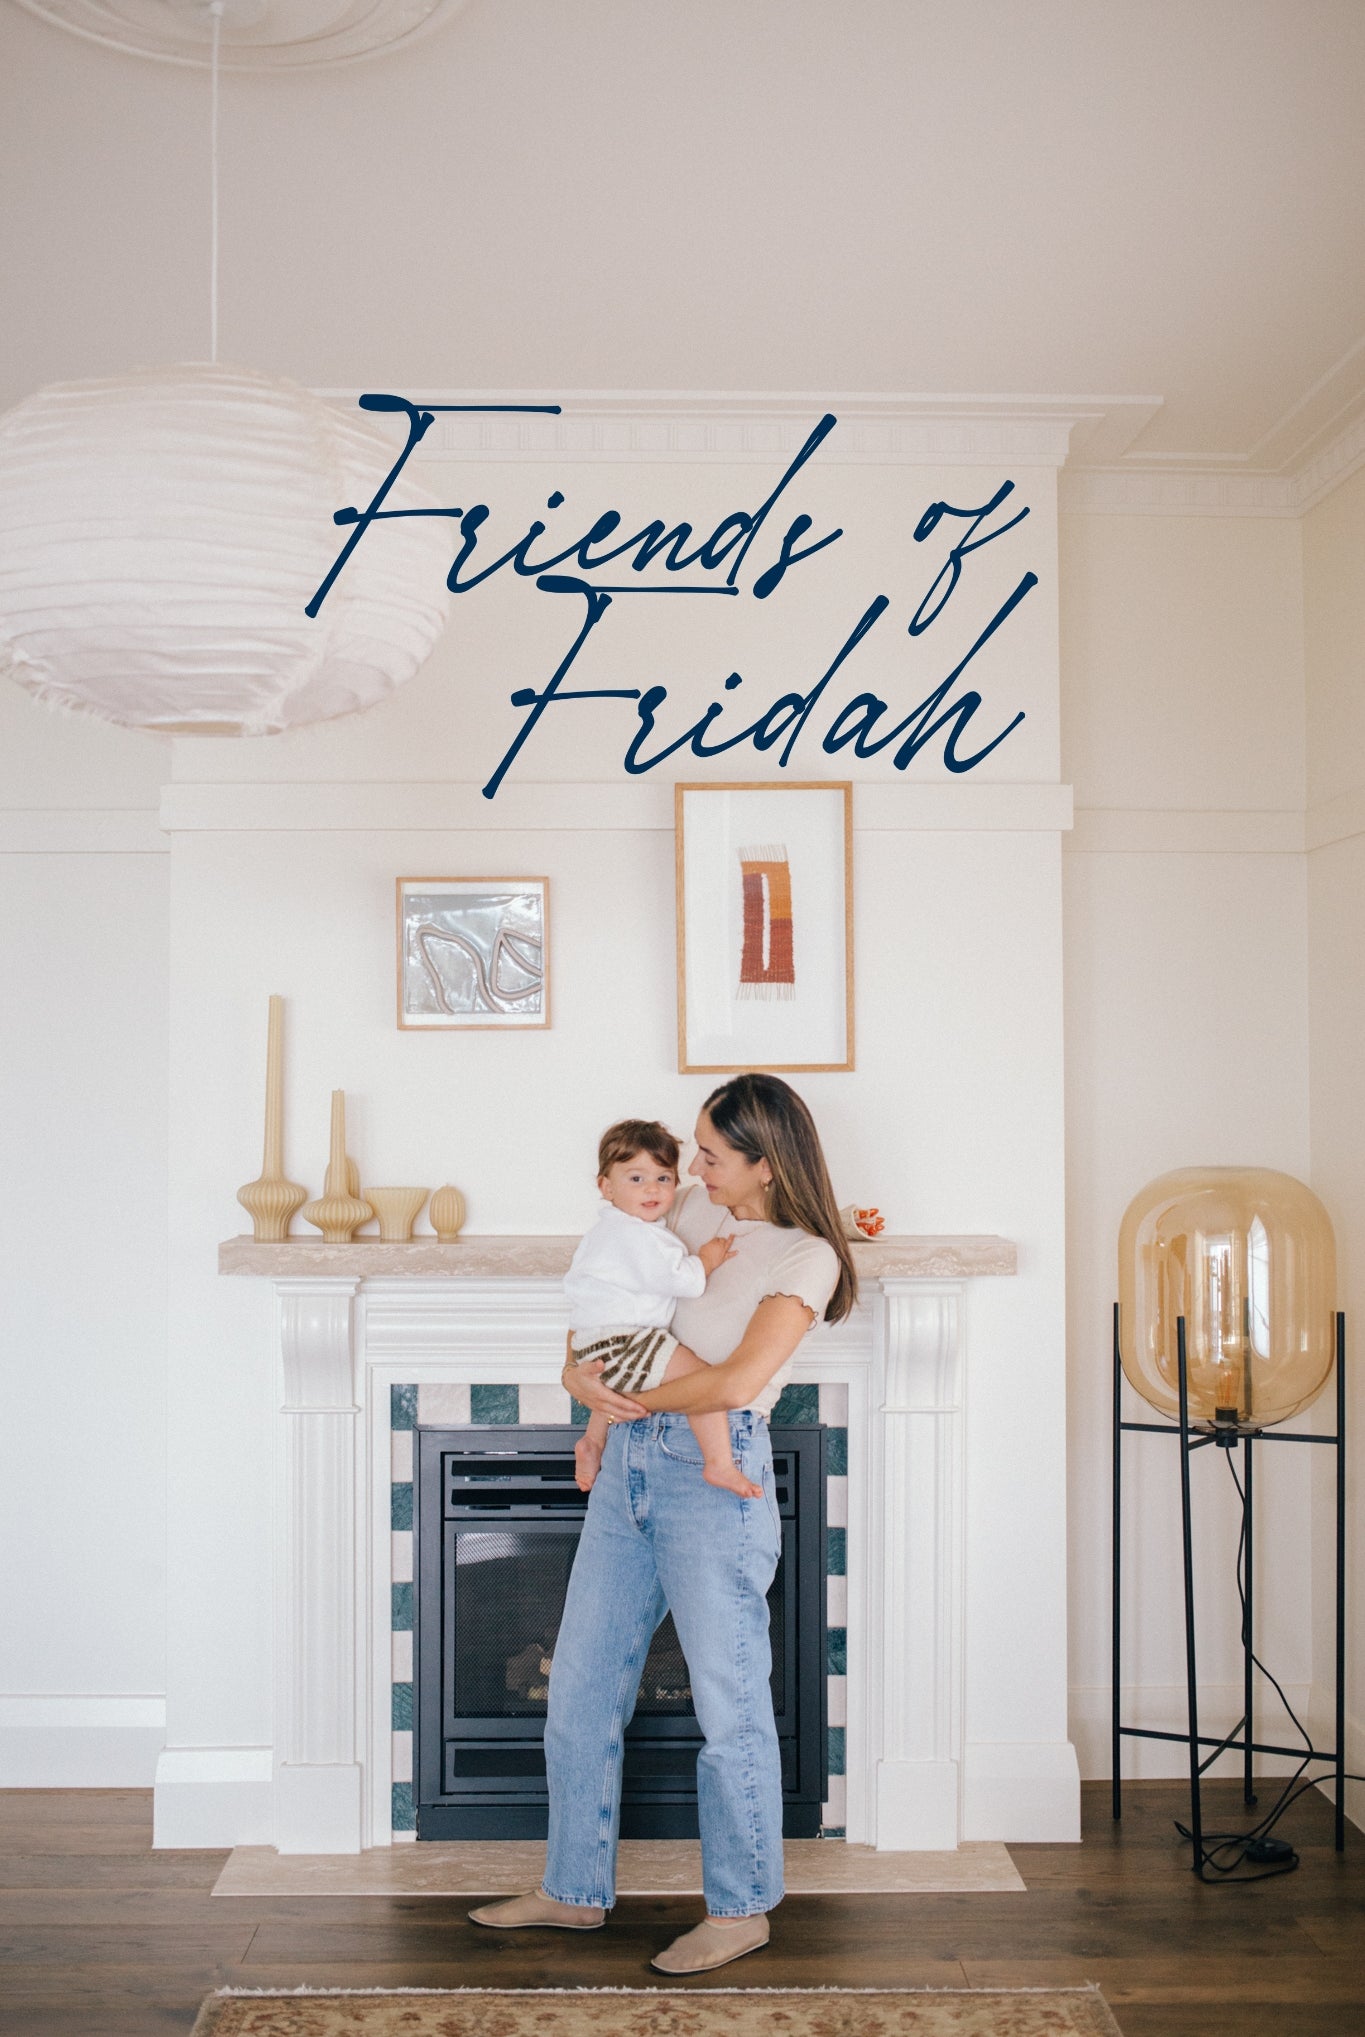 Friends of Fridah: Anna Vidovic